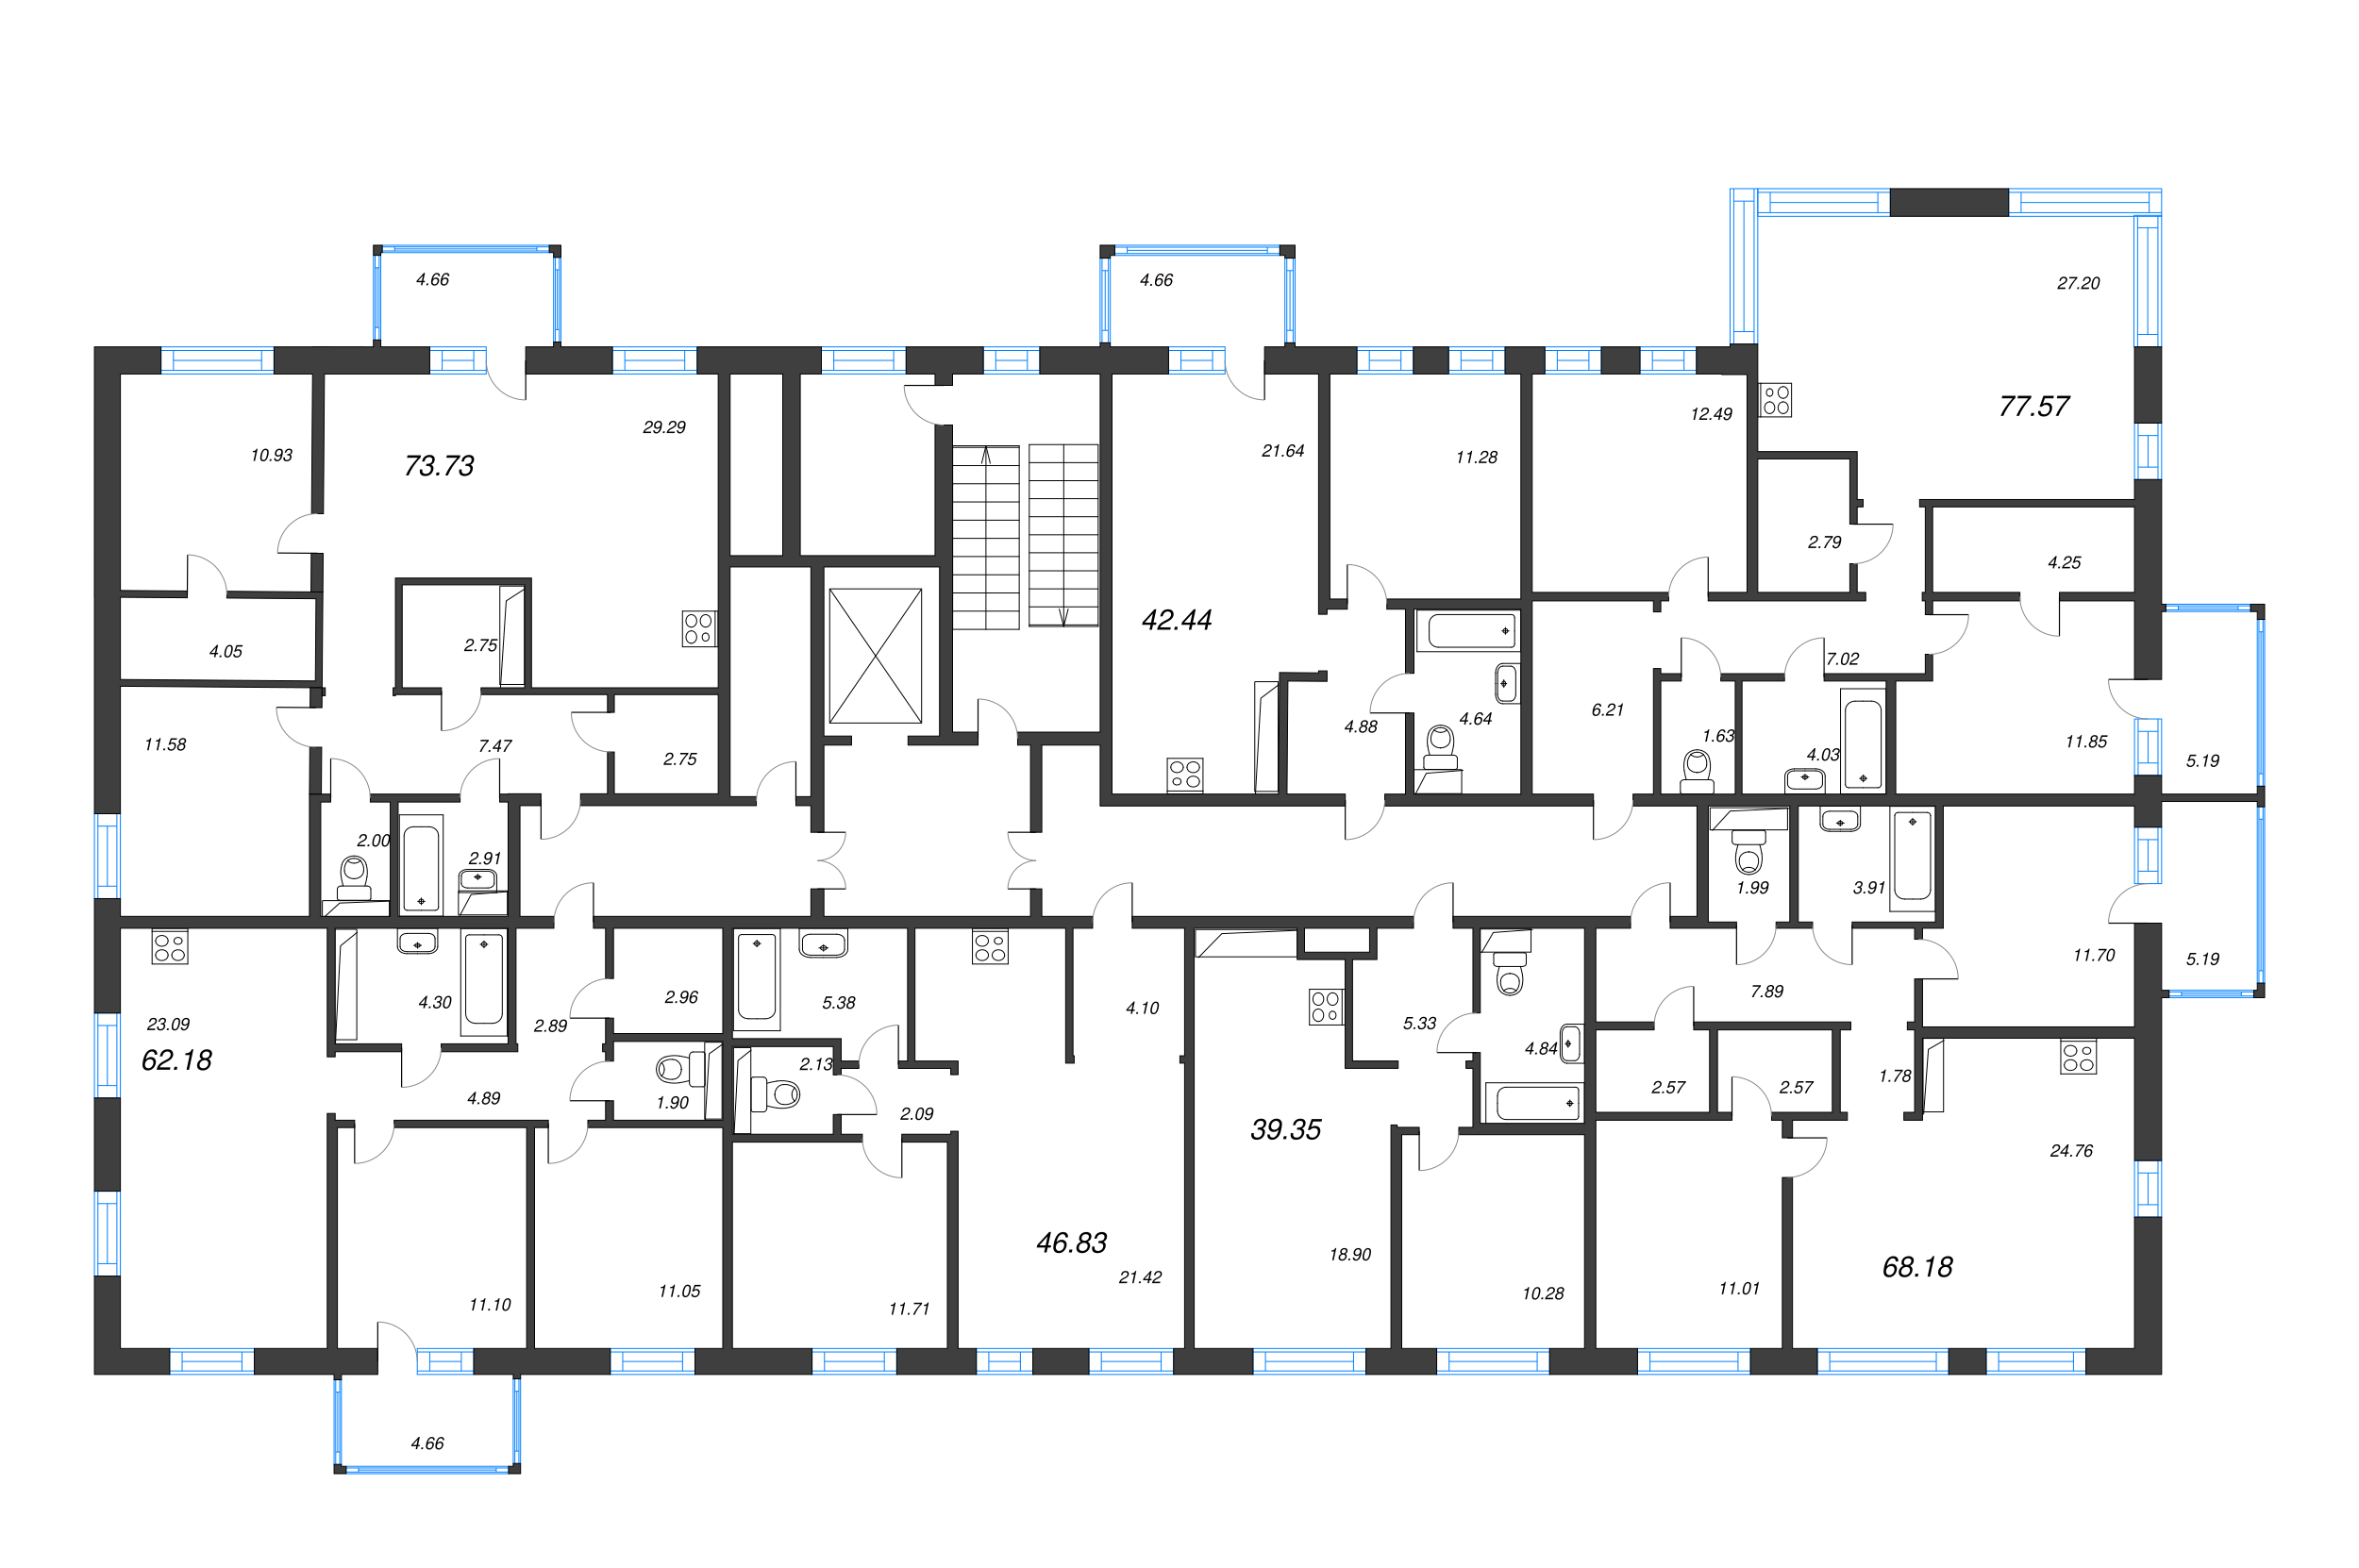 2-комнатная (Евро) квартира, 42.44 м² в ЖК "Черная речка, 41" - планировка этажа